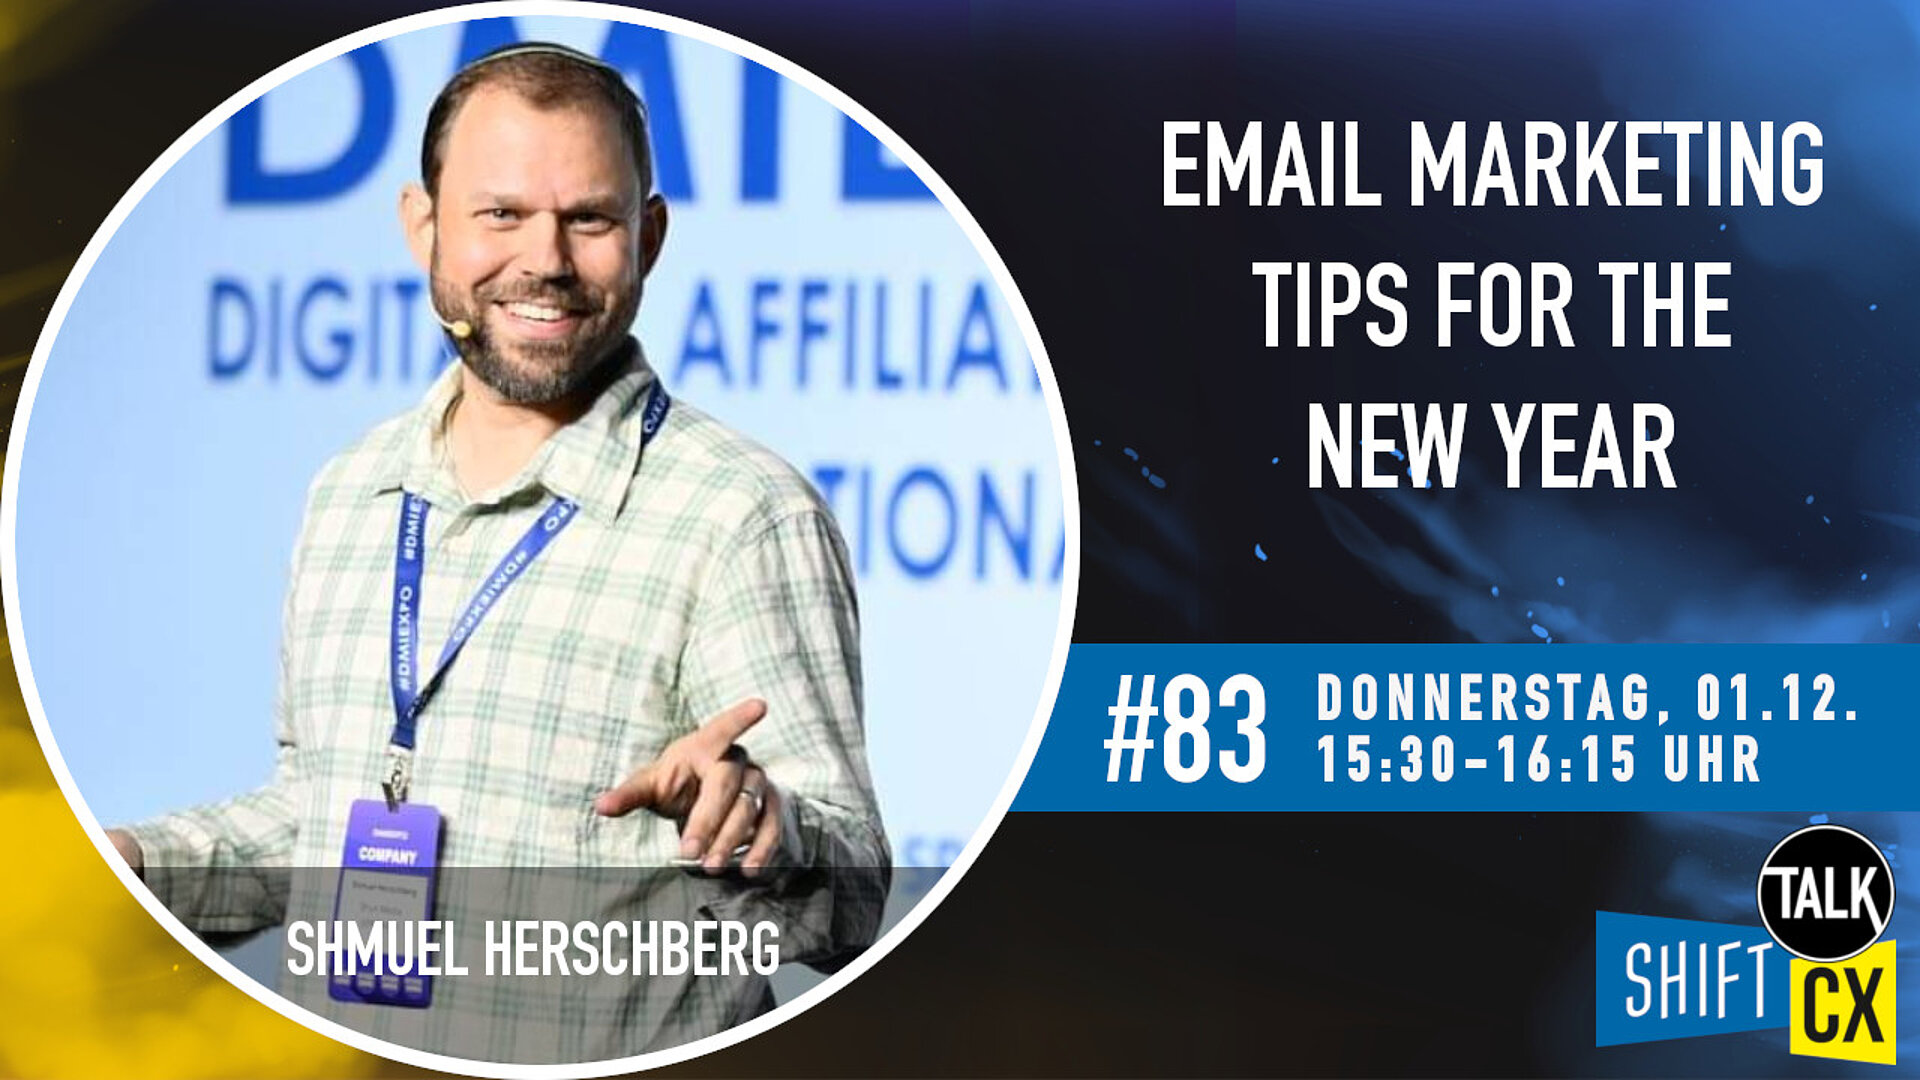 Im Gespräch mit Shmuel Herschberg zu den "Email Marketing Tips for the New Year!"